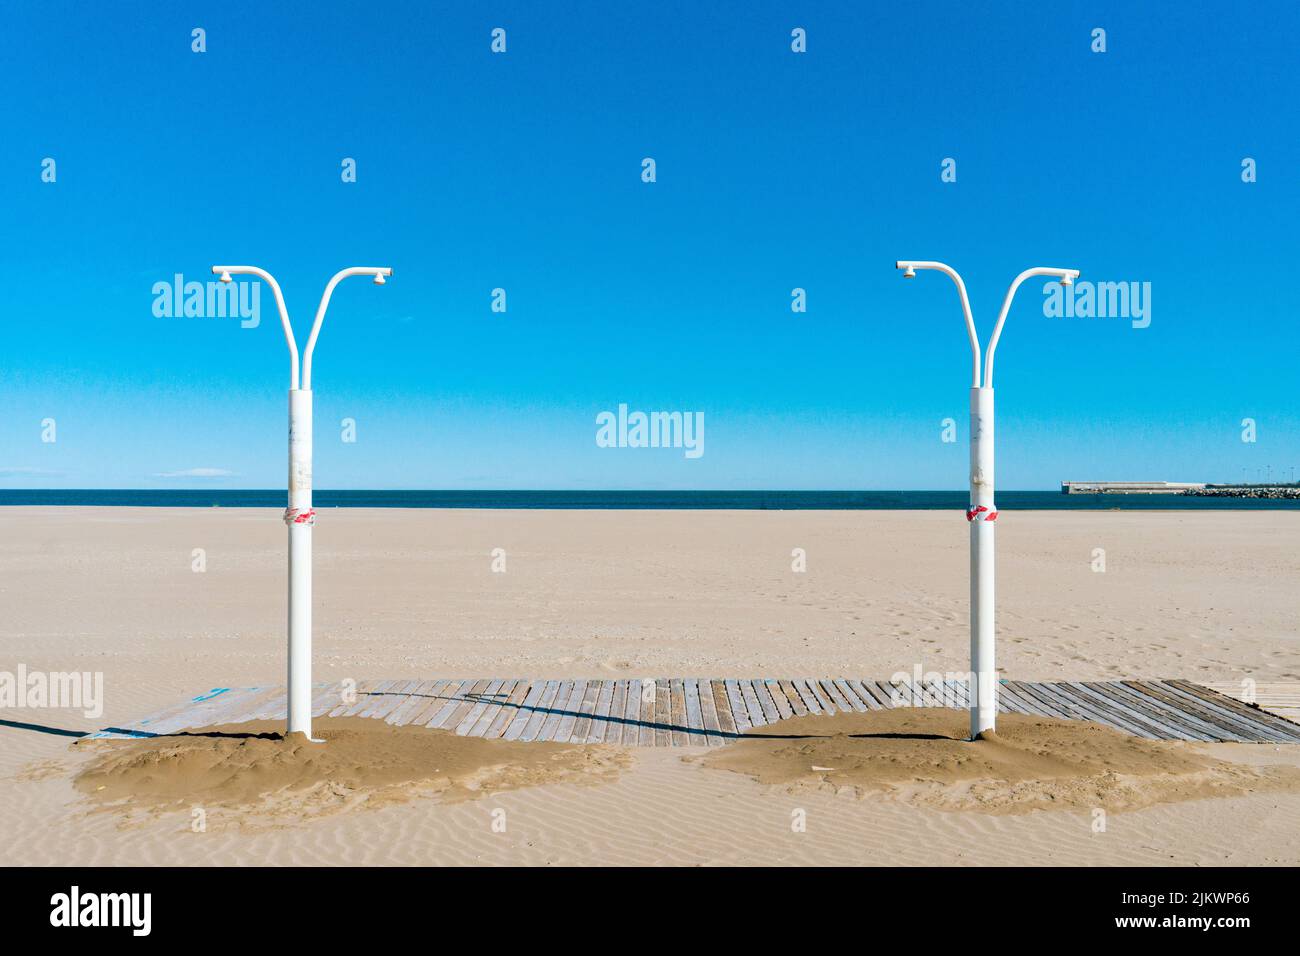 Docce pubbliche all'aperto sulla spiaggia in spagna, concetto di vacanza estiva Foto Stock